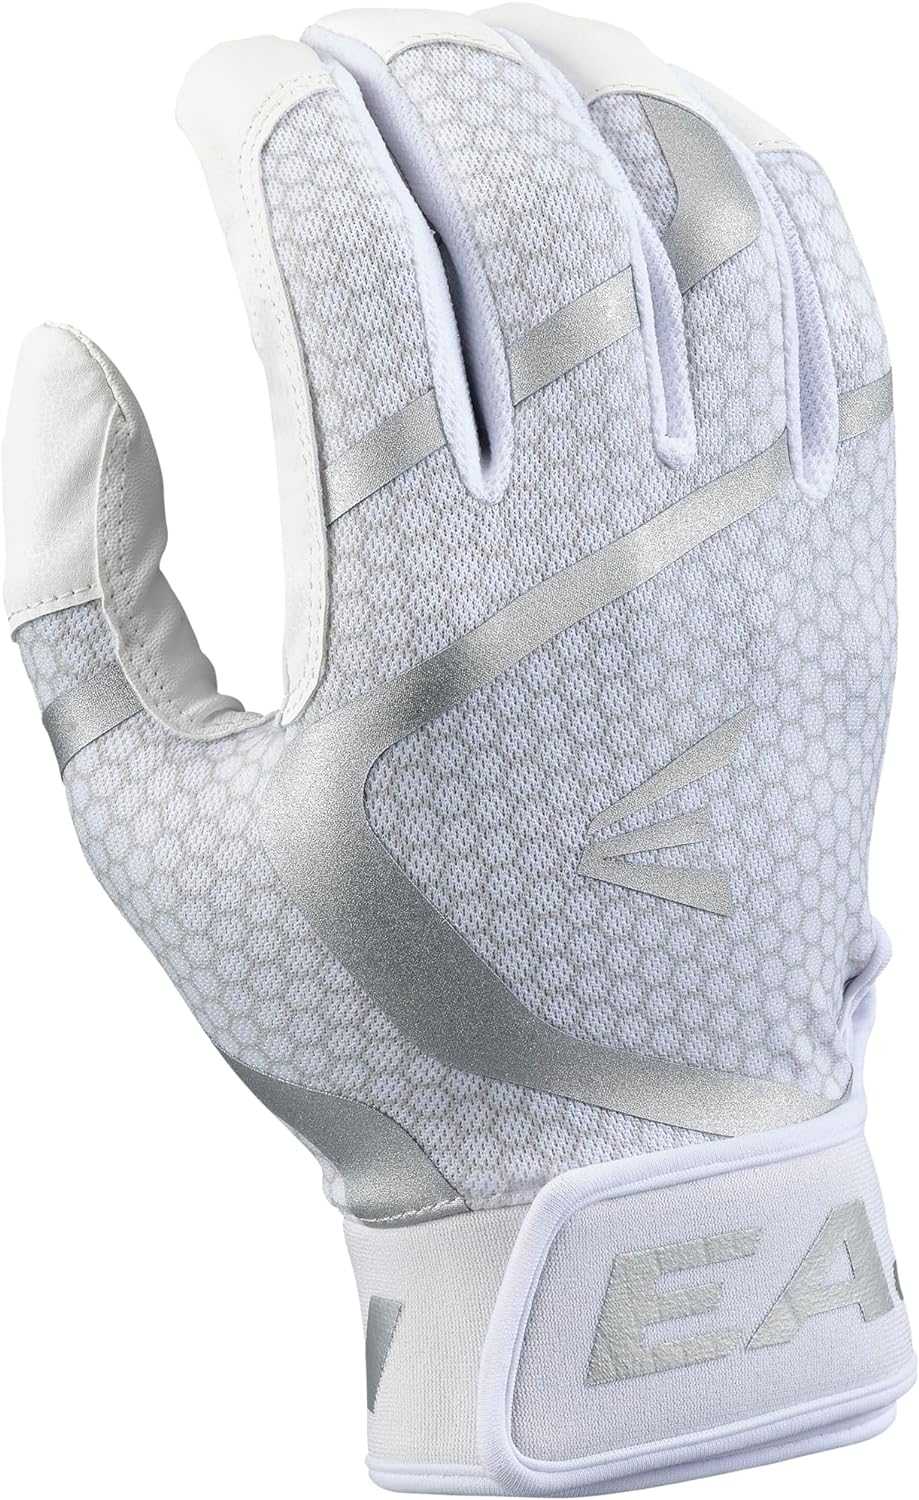 Easton MAV GT Batting Gloves - White - HIT a Double - 1